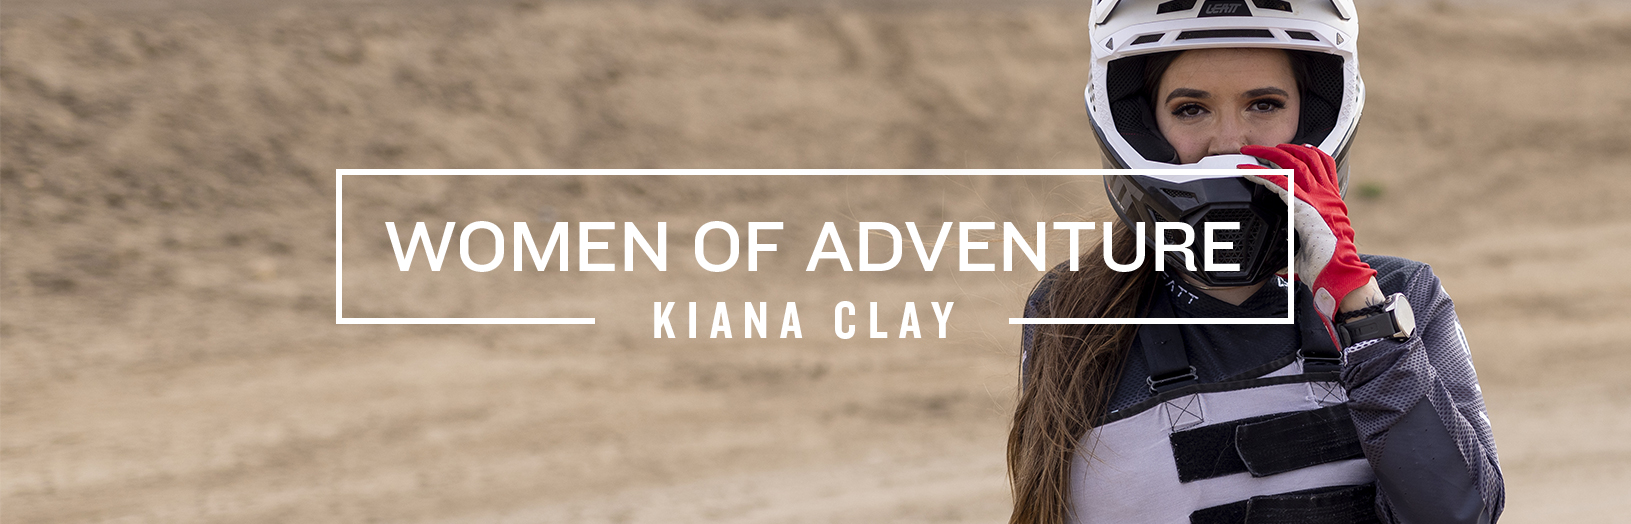 Women of adventure - Kiana Clay